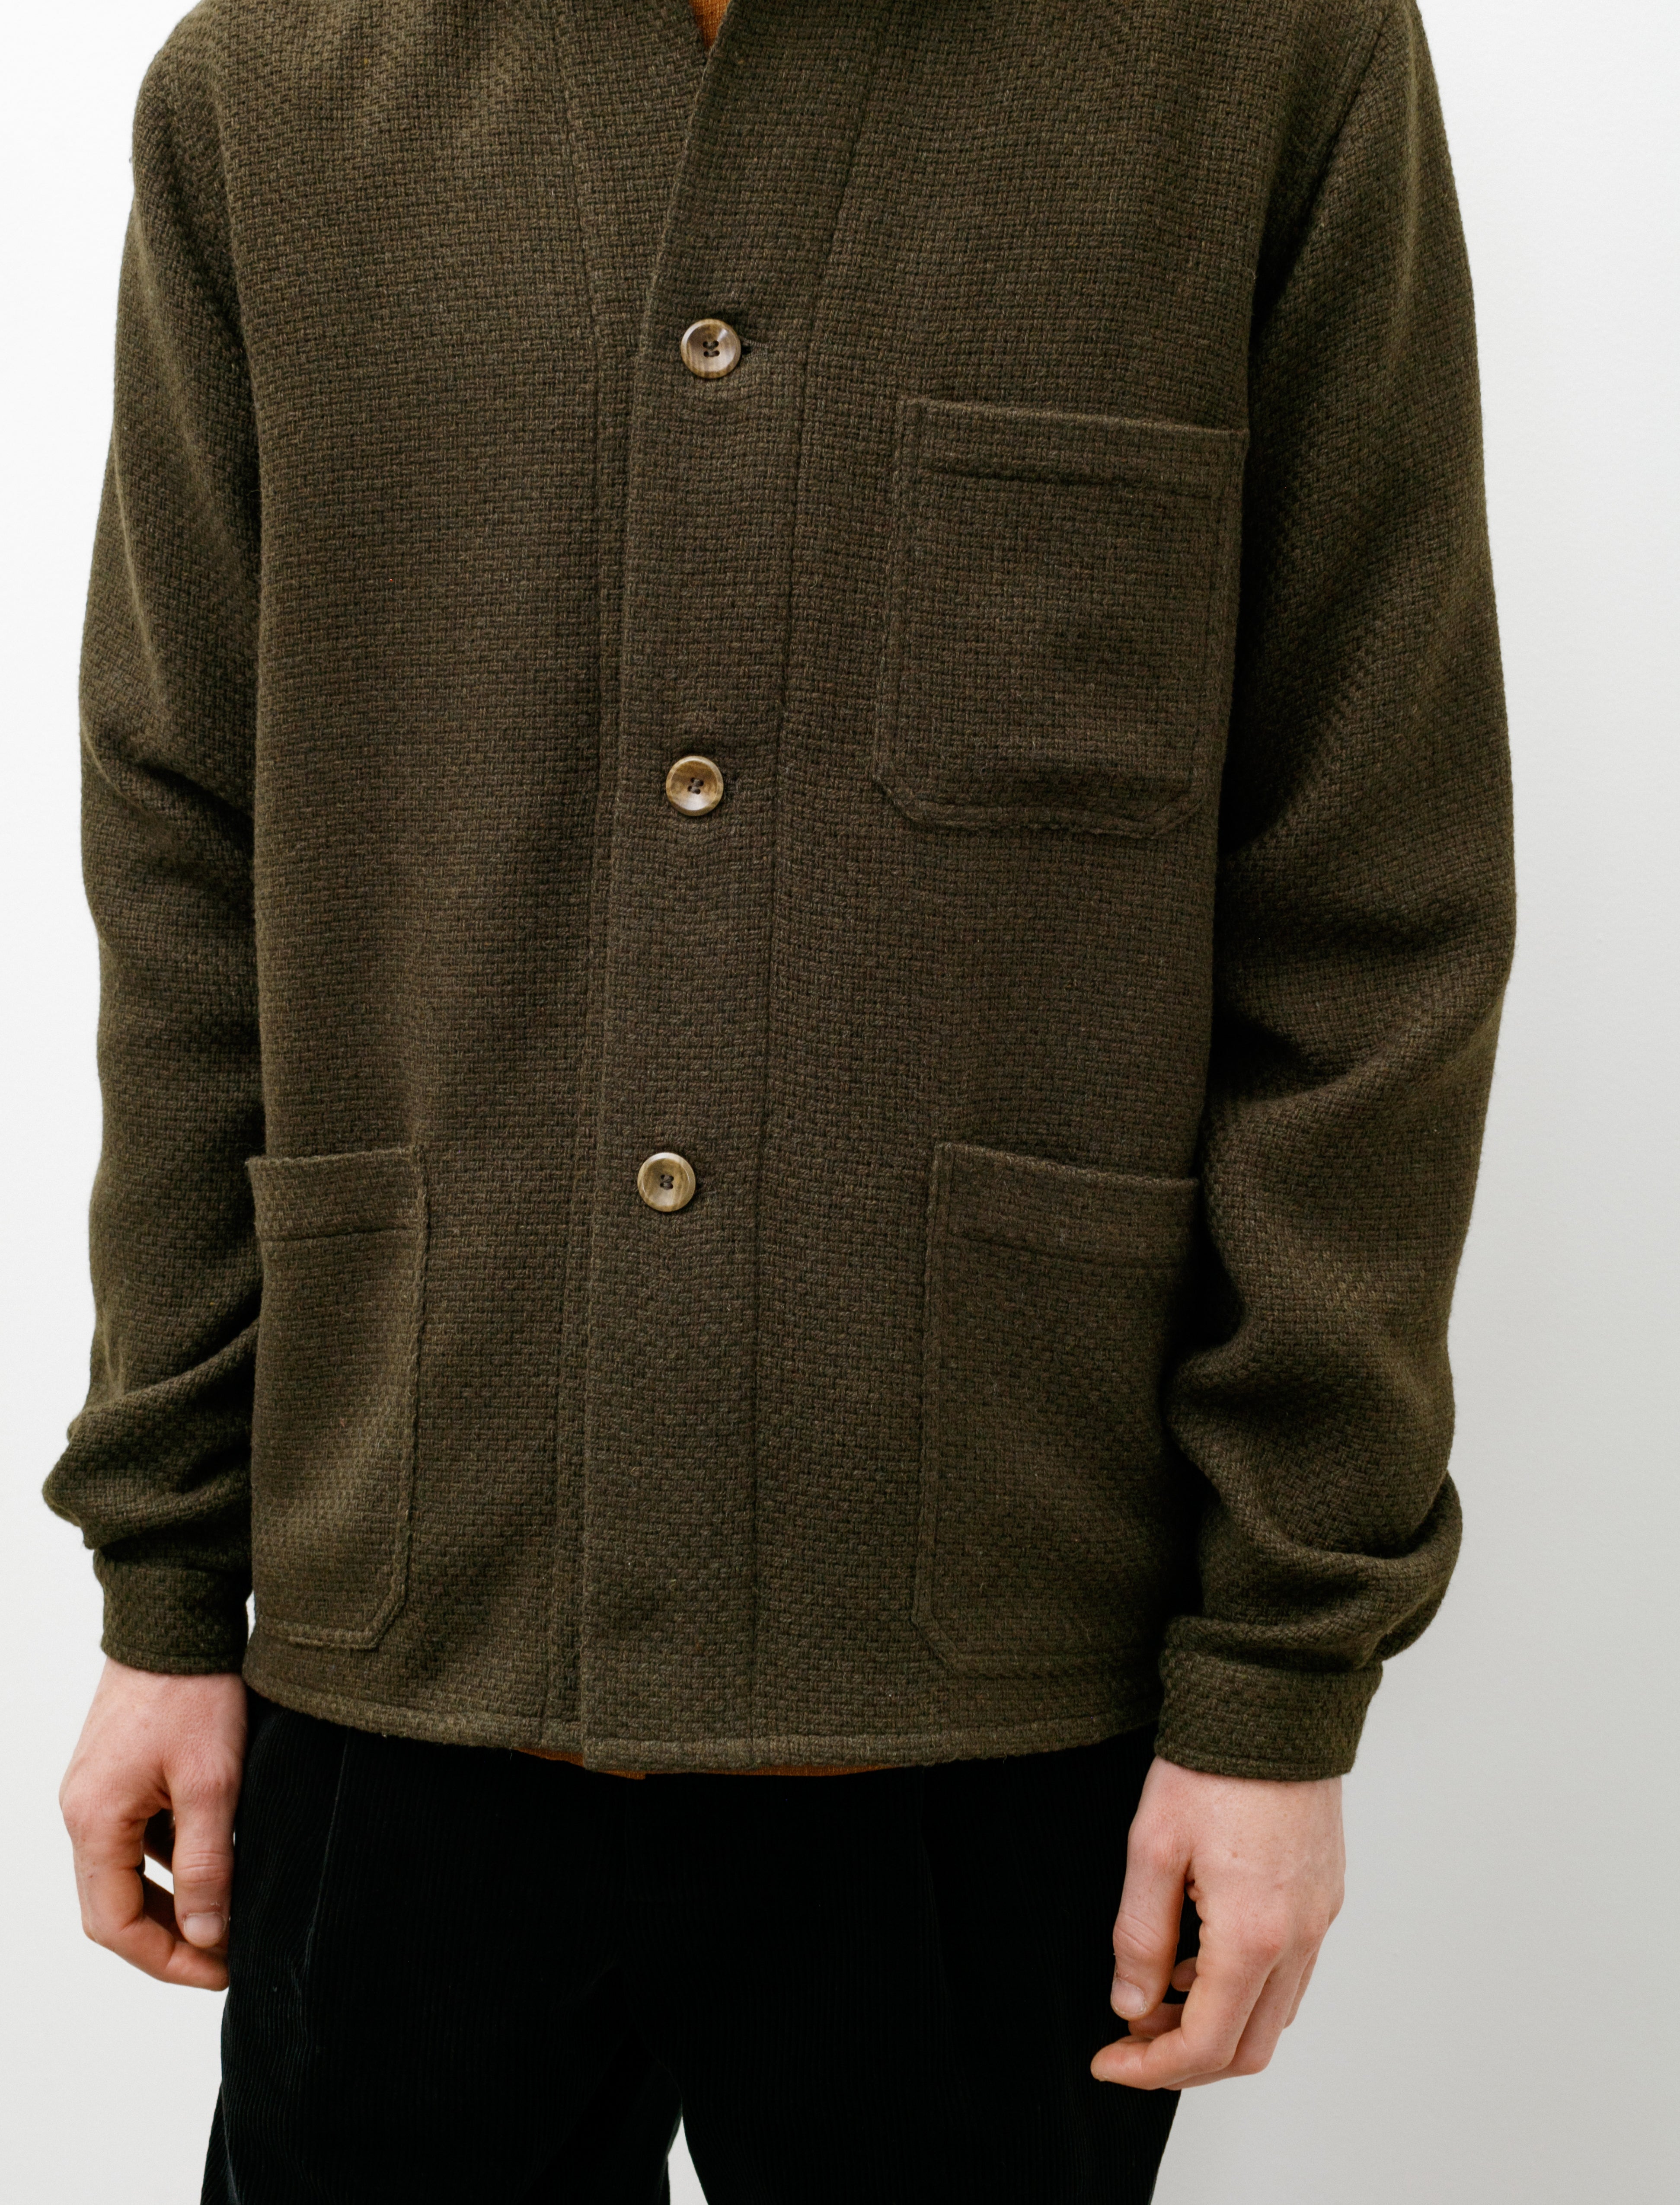 Frank Leder Three Pocket Shirt Jacket Wool Loden Green – Neighbour